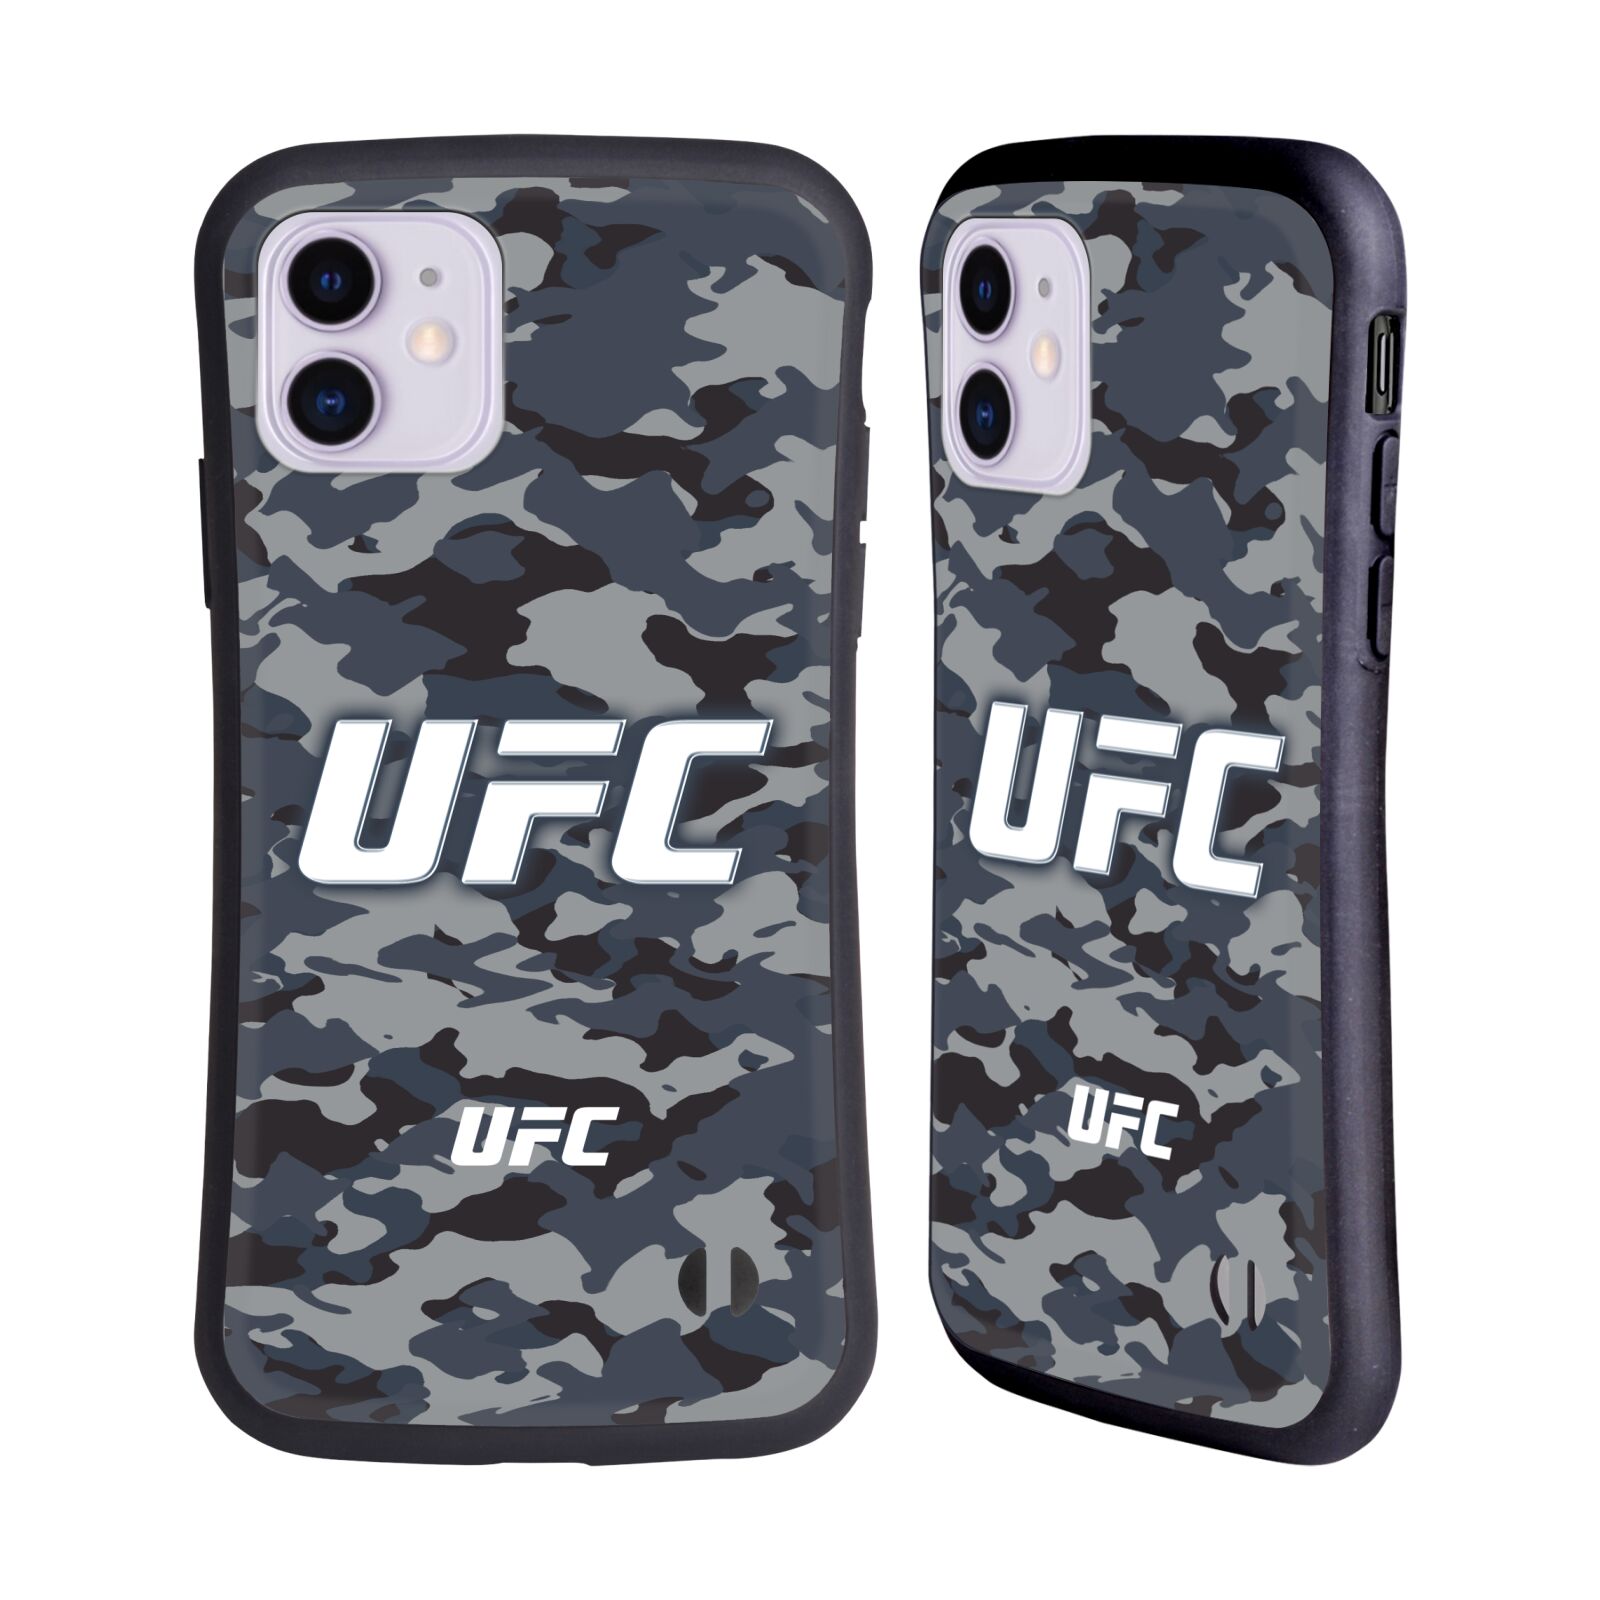 Odolný zadní obal pro mobil Apple Iphone 11 - HEAD CASE - UFC - kamufláž